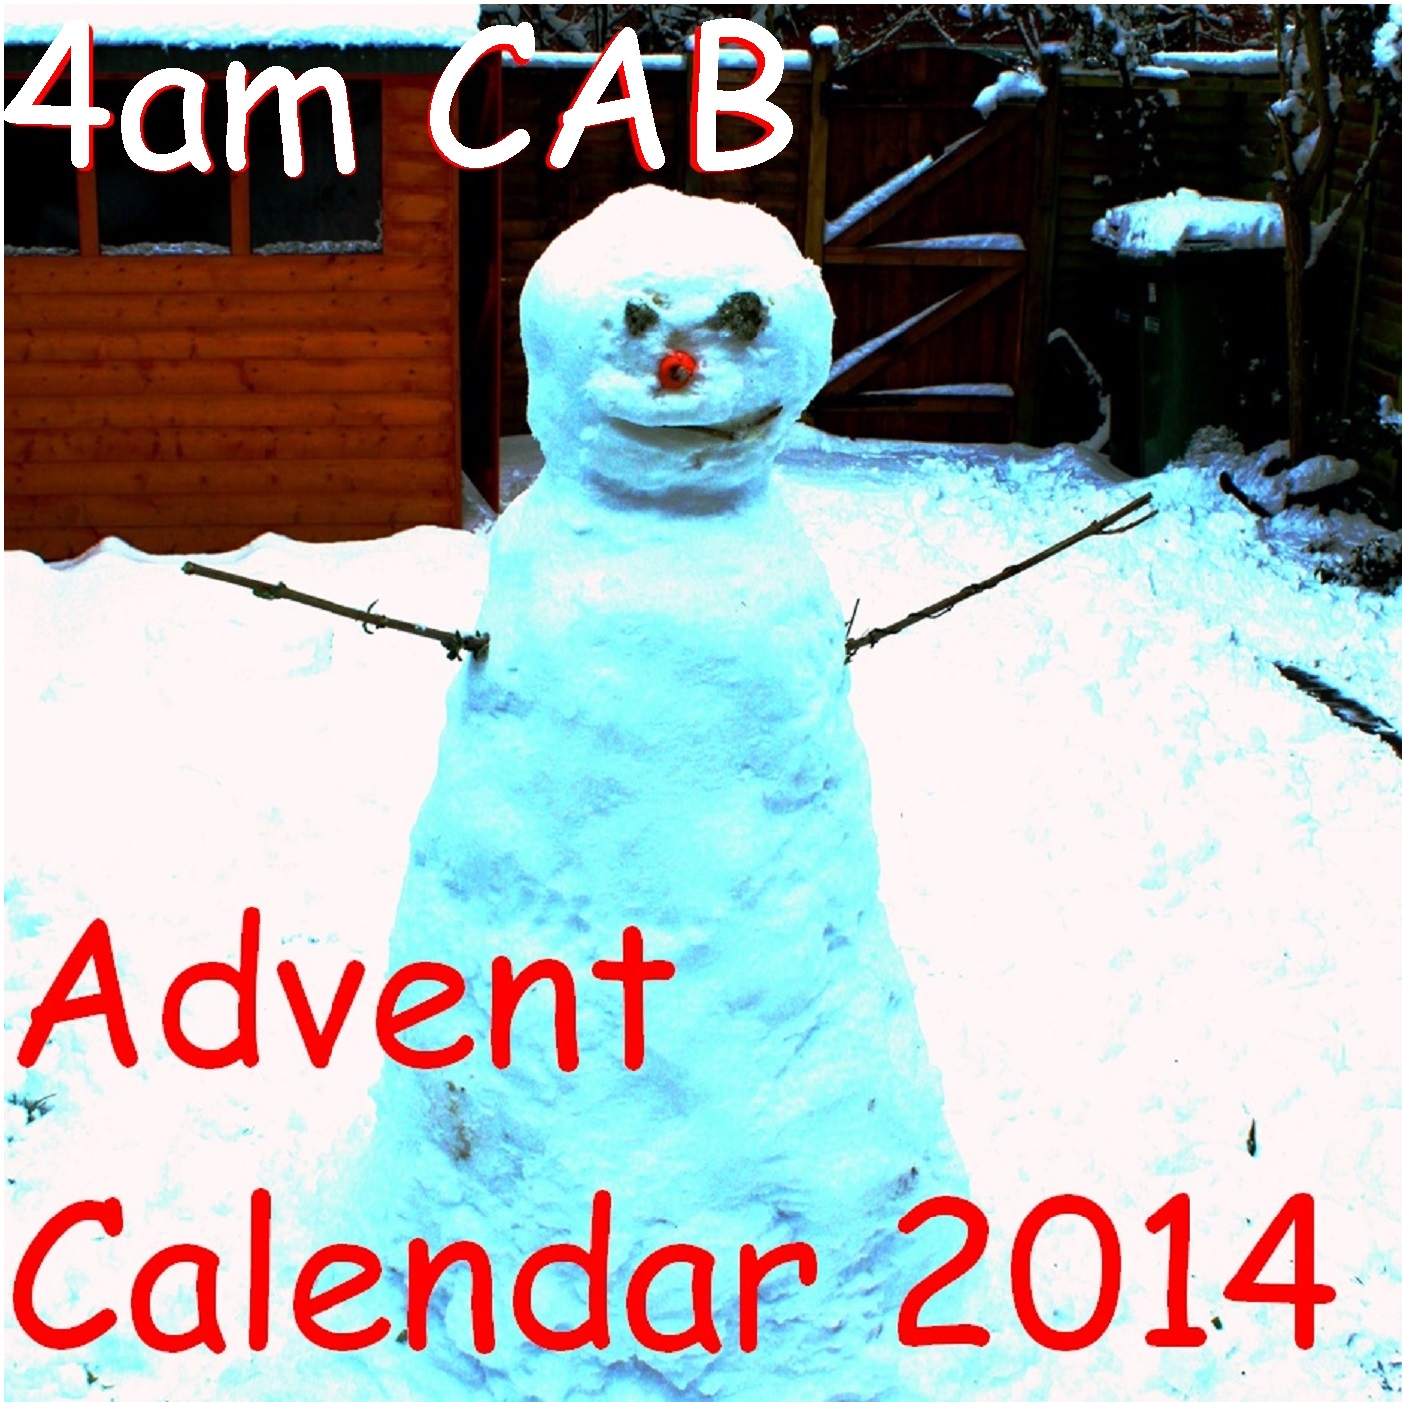 4am CAB Advent Calendar